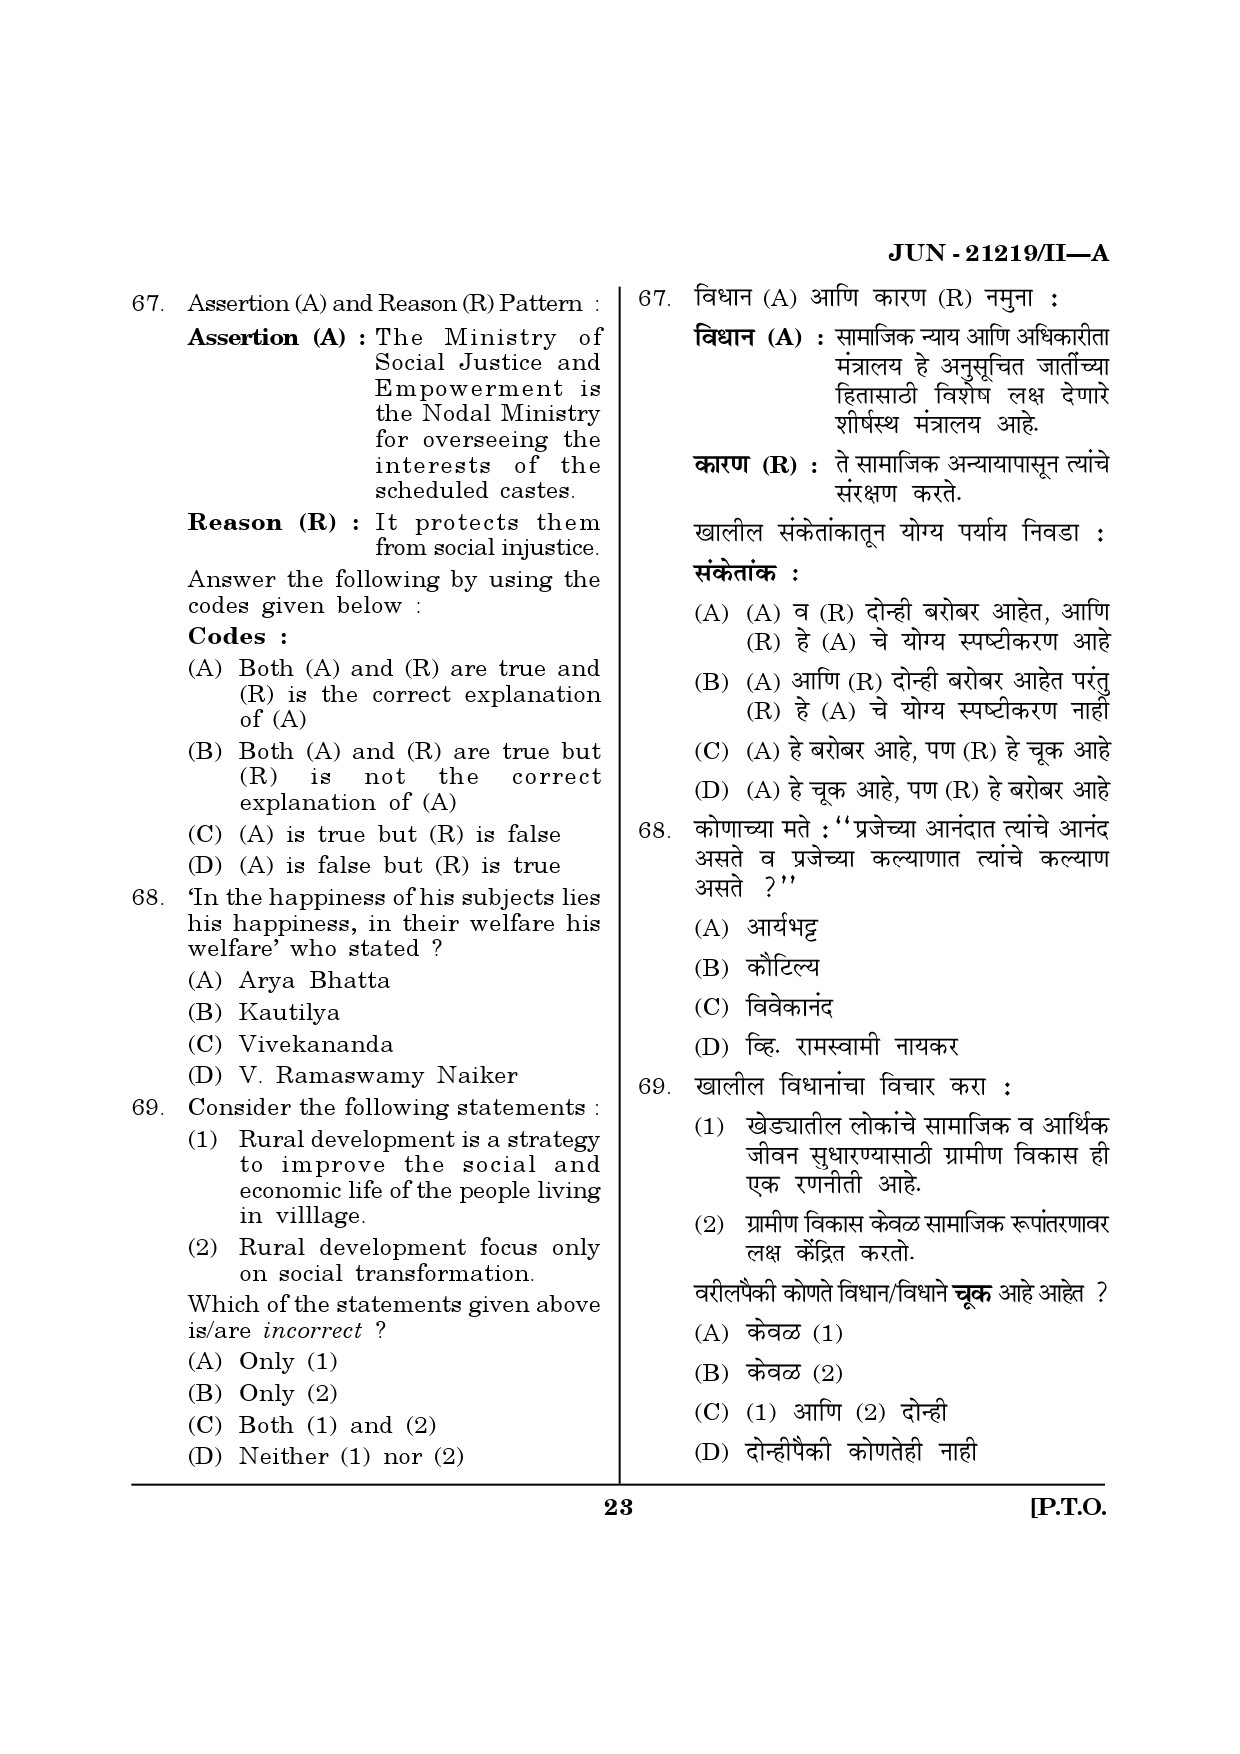 Maharashtra SET Public Administration Question Paper II June 2019 22